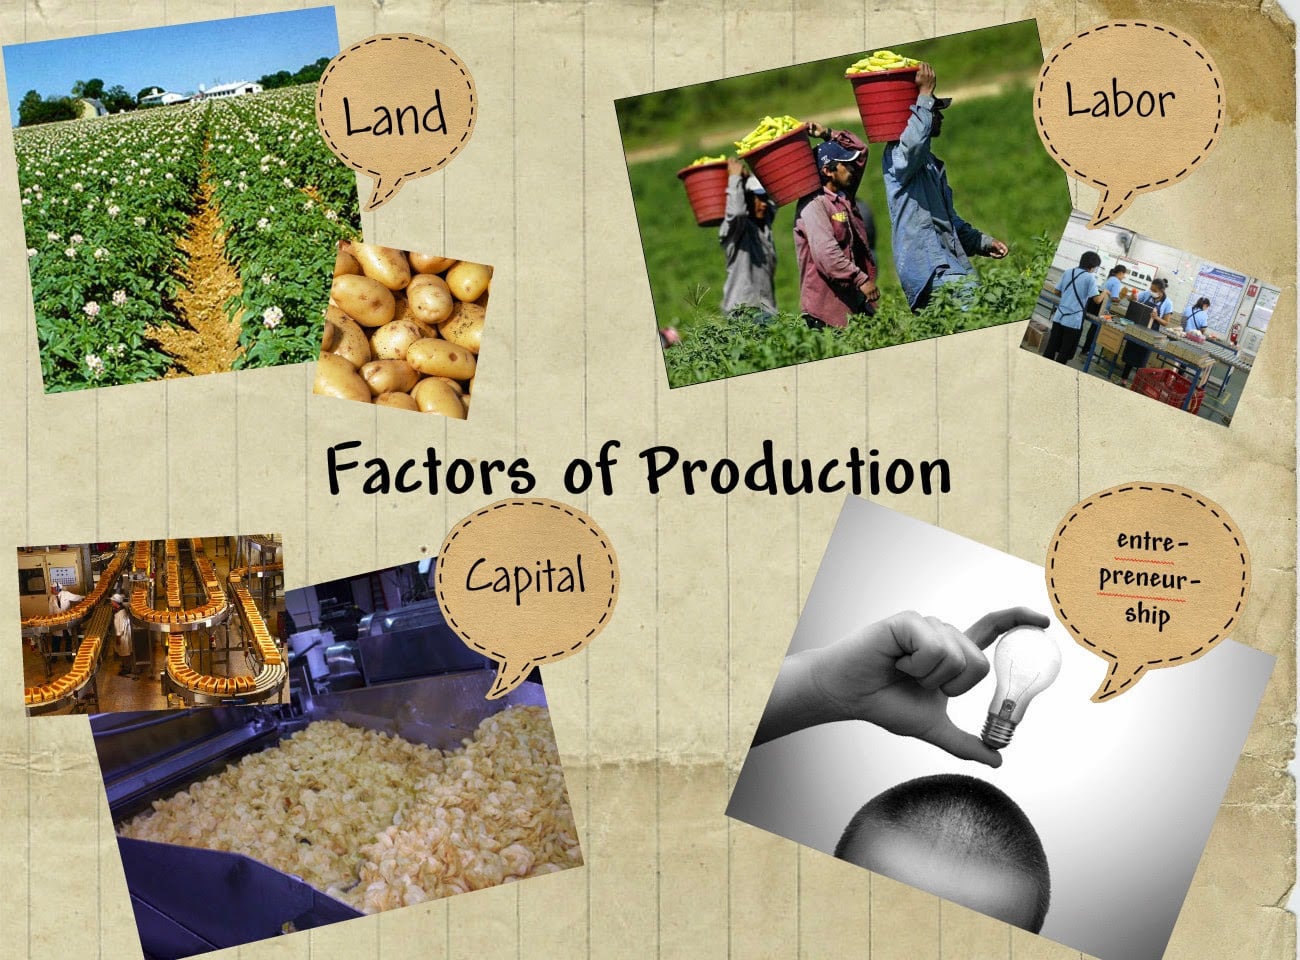 faktor produksi